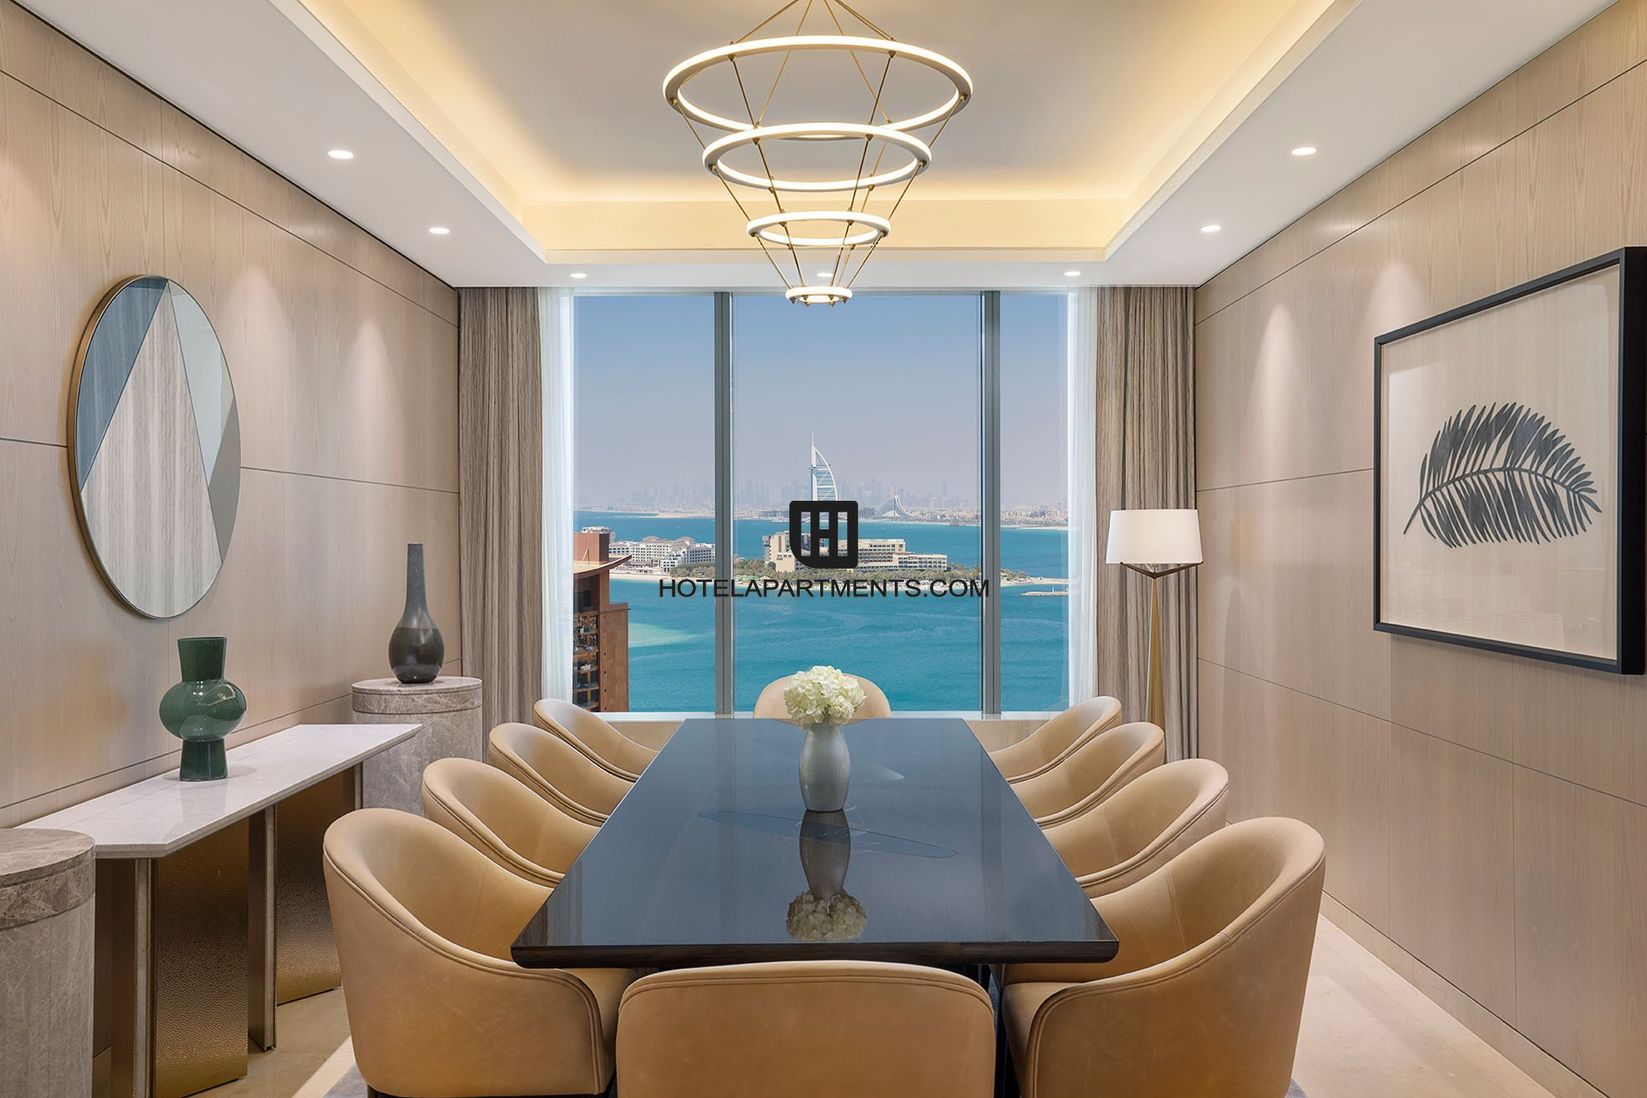 Glamorous Presidential Suites With Ocean Views